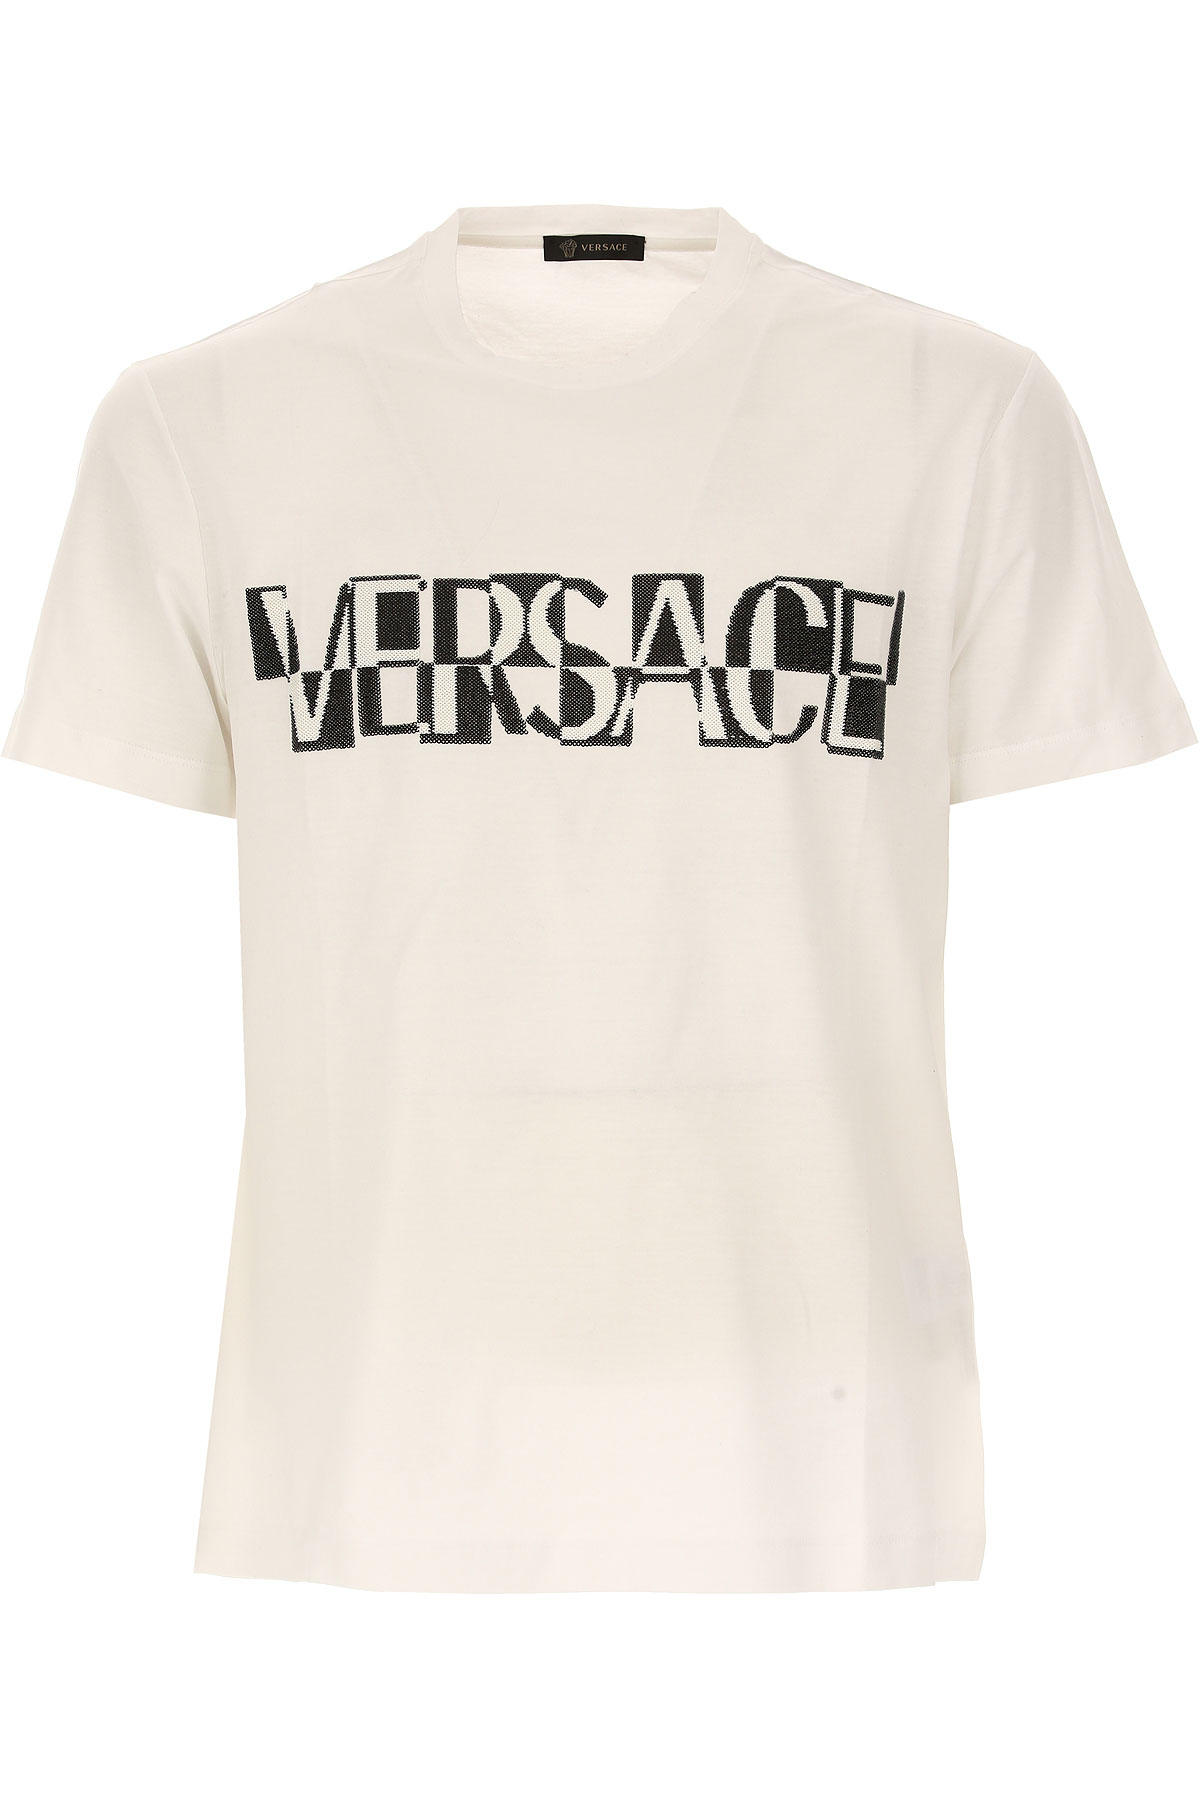 Versace T-shirt Homme Outlet, Blanc, Coton, 2017, L M XL